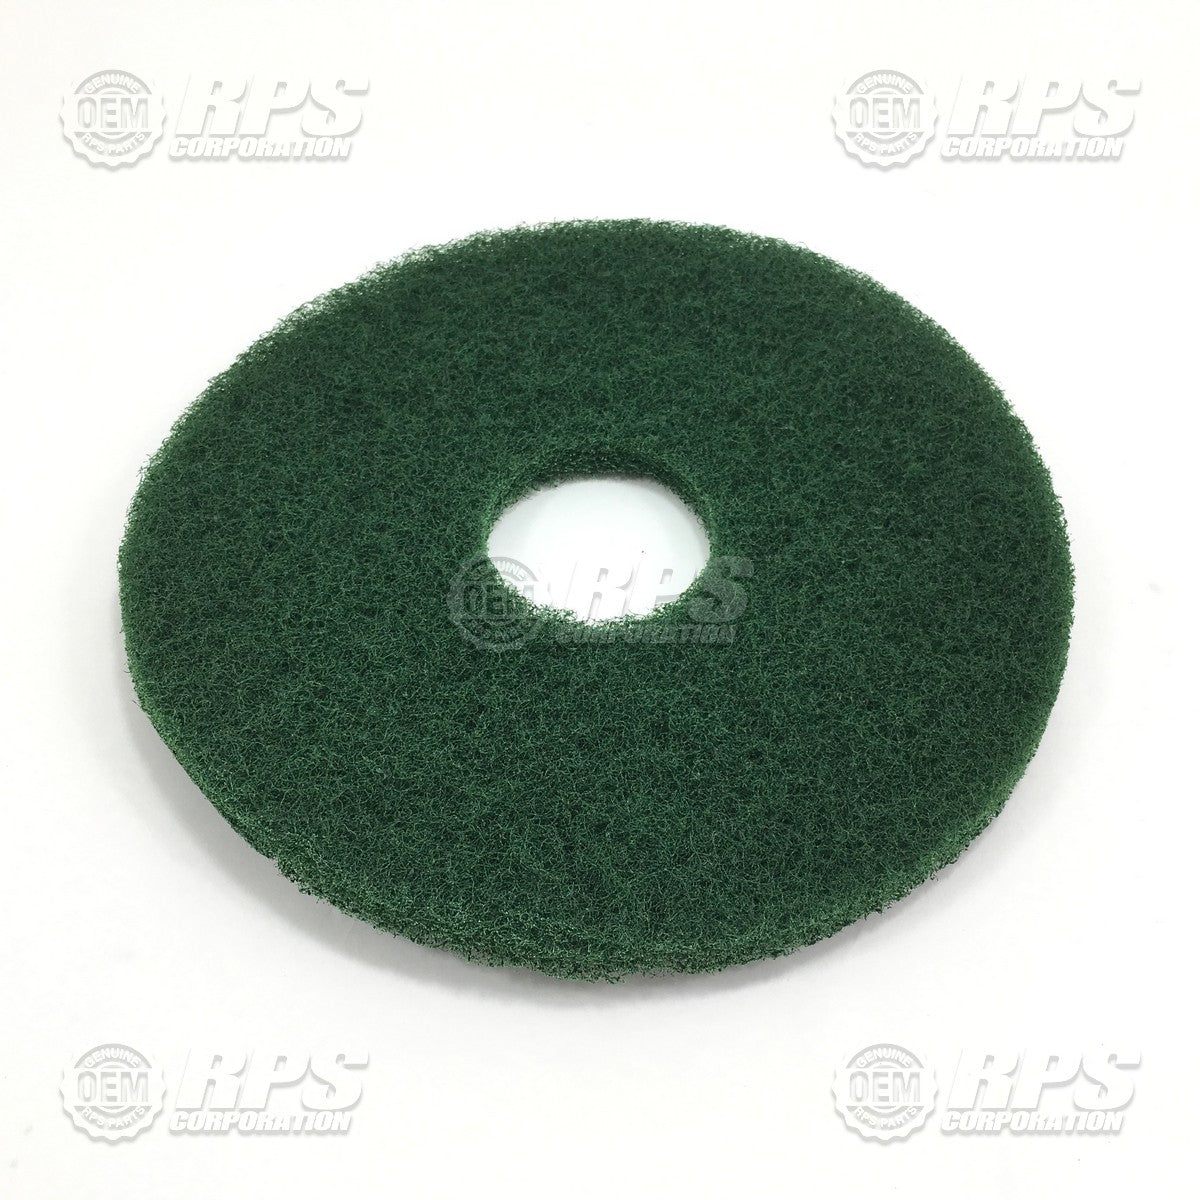 FactoryCat/Tomcat 14-422G, Floor Pads, 14" Green - Case of 5 pads